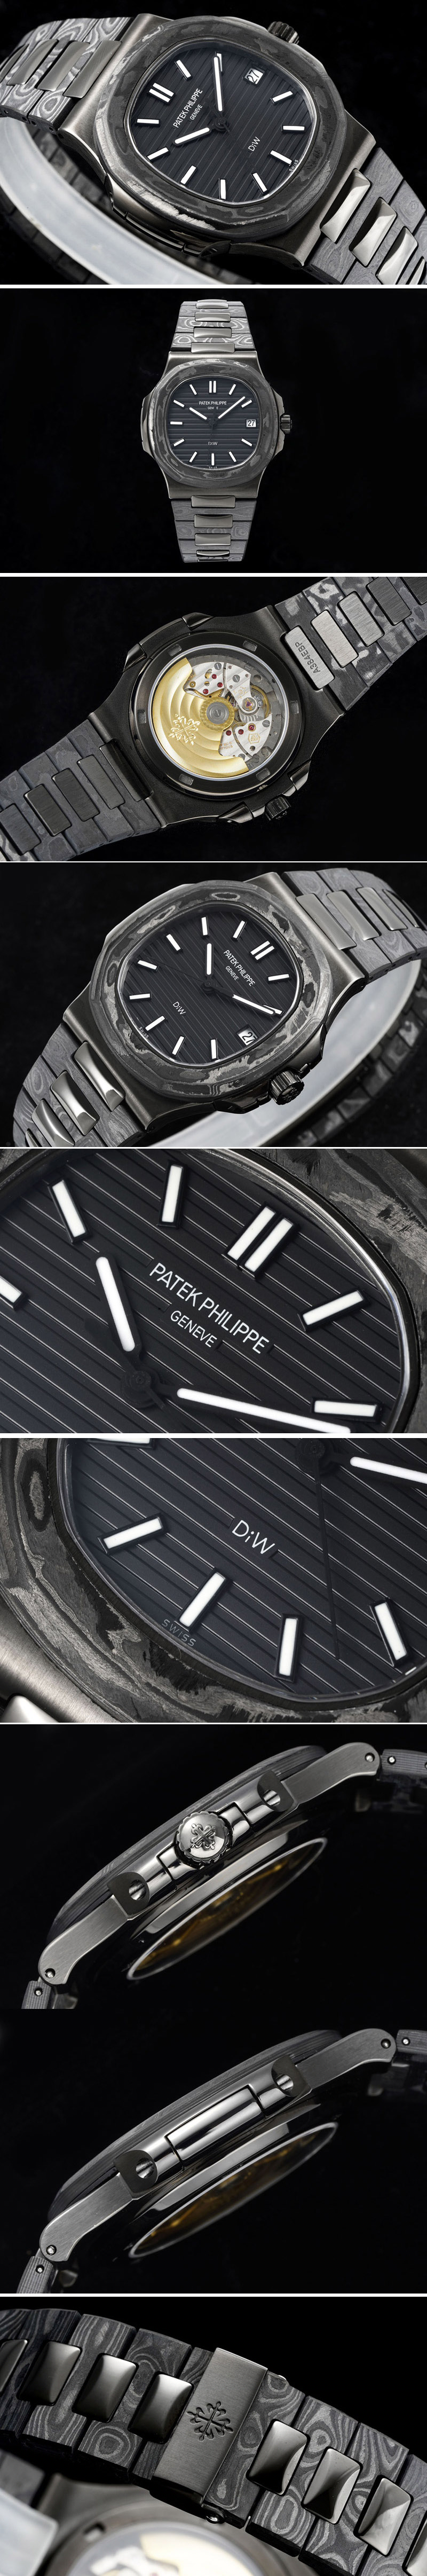 Replica Patek Philippe Nautilus 5711 DIW Carbon DIWF 1:1 Best Edition Black Textured Dial on Carbon/PVD Bracelet 324CS